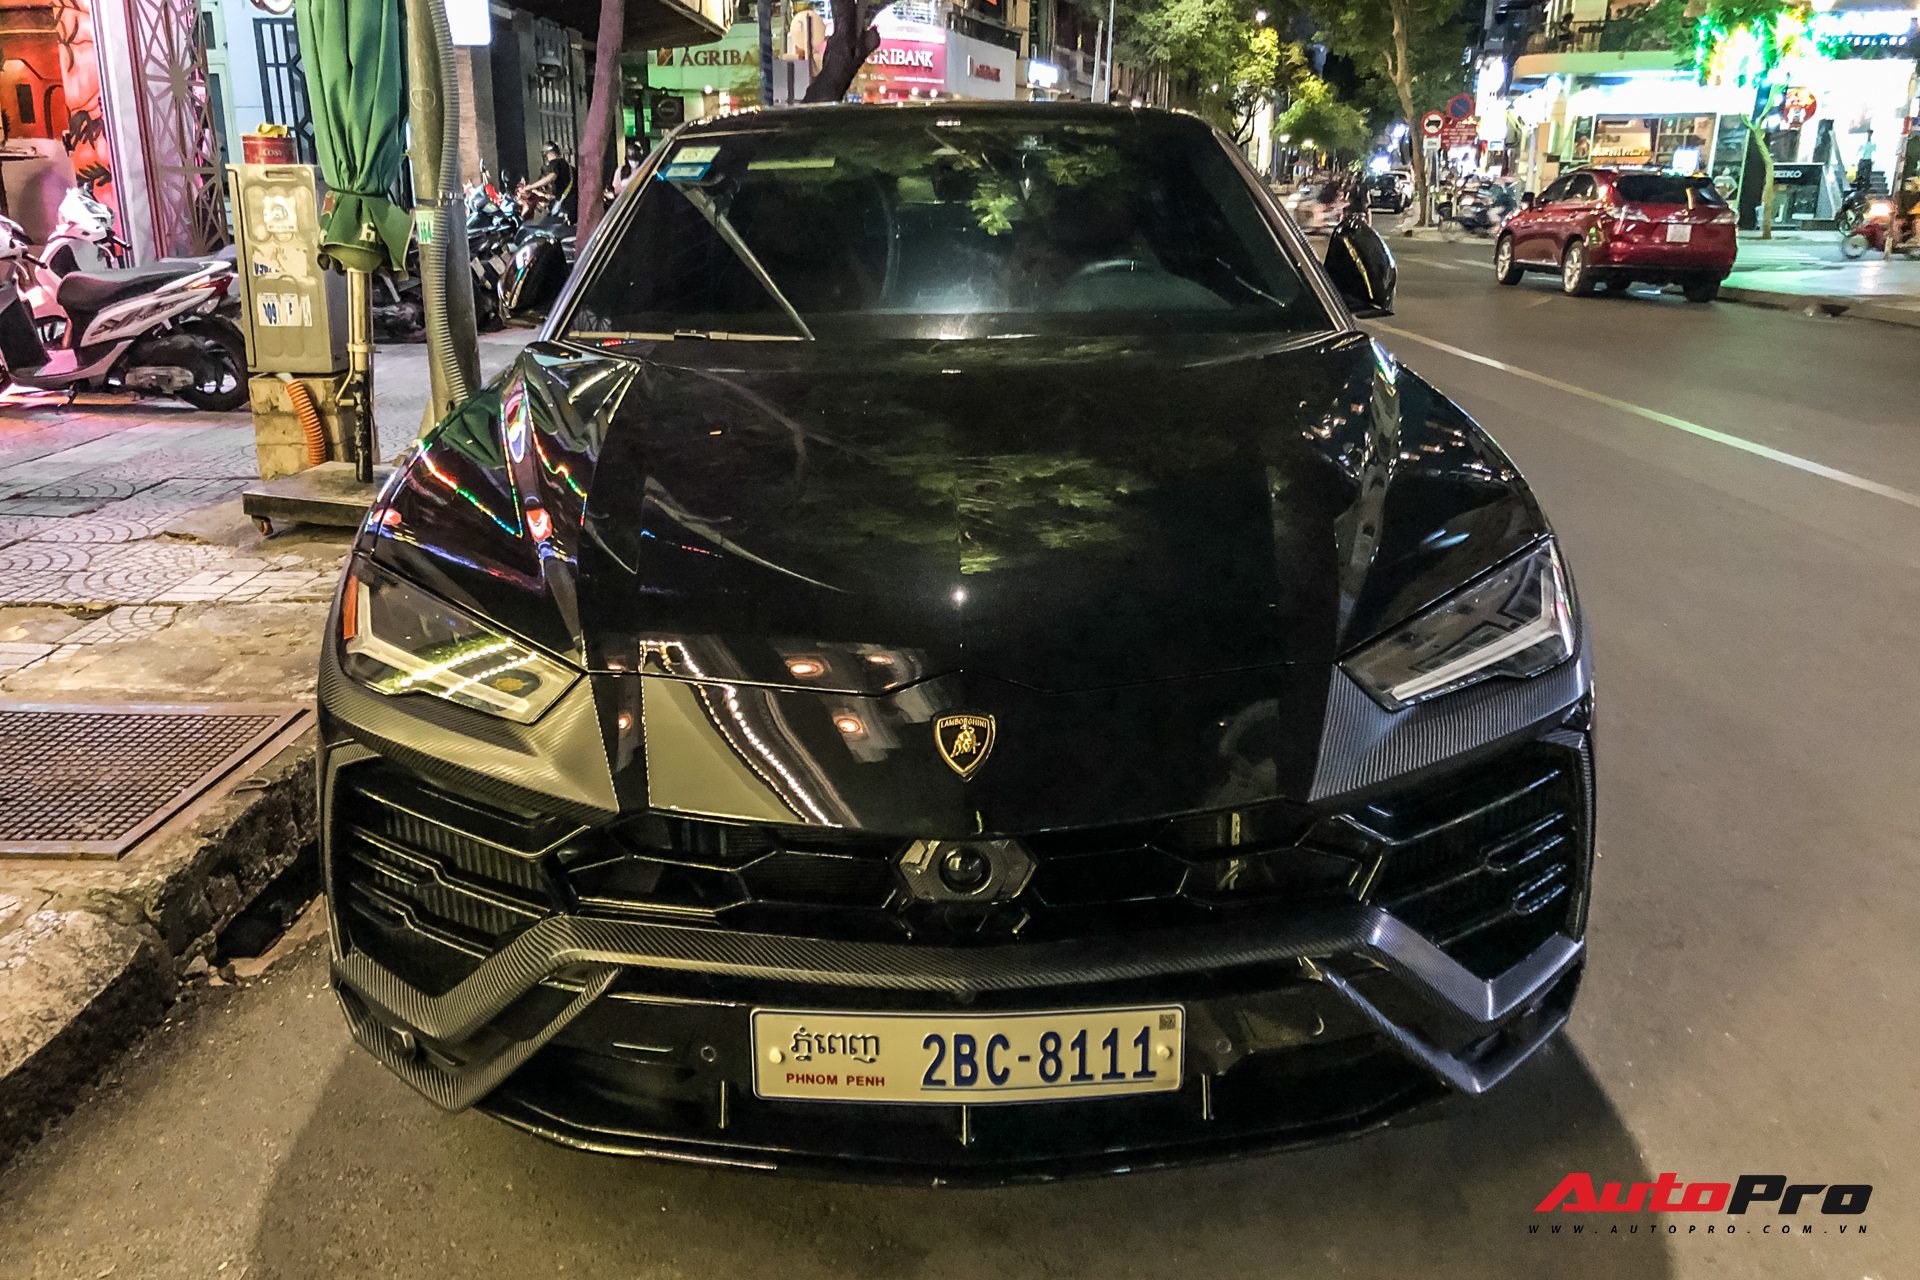 Lamborghini Urus biển số lạ xuất hiện tại Sài Gòn với một chi tiết khác biệt với những chiếc còn lại tại Việt Nam - Ảnh 5.